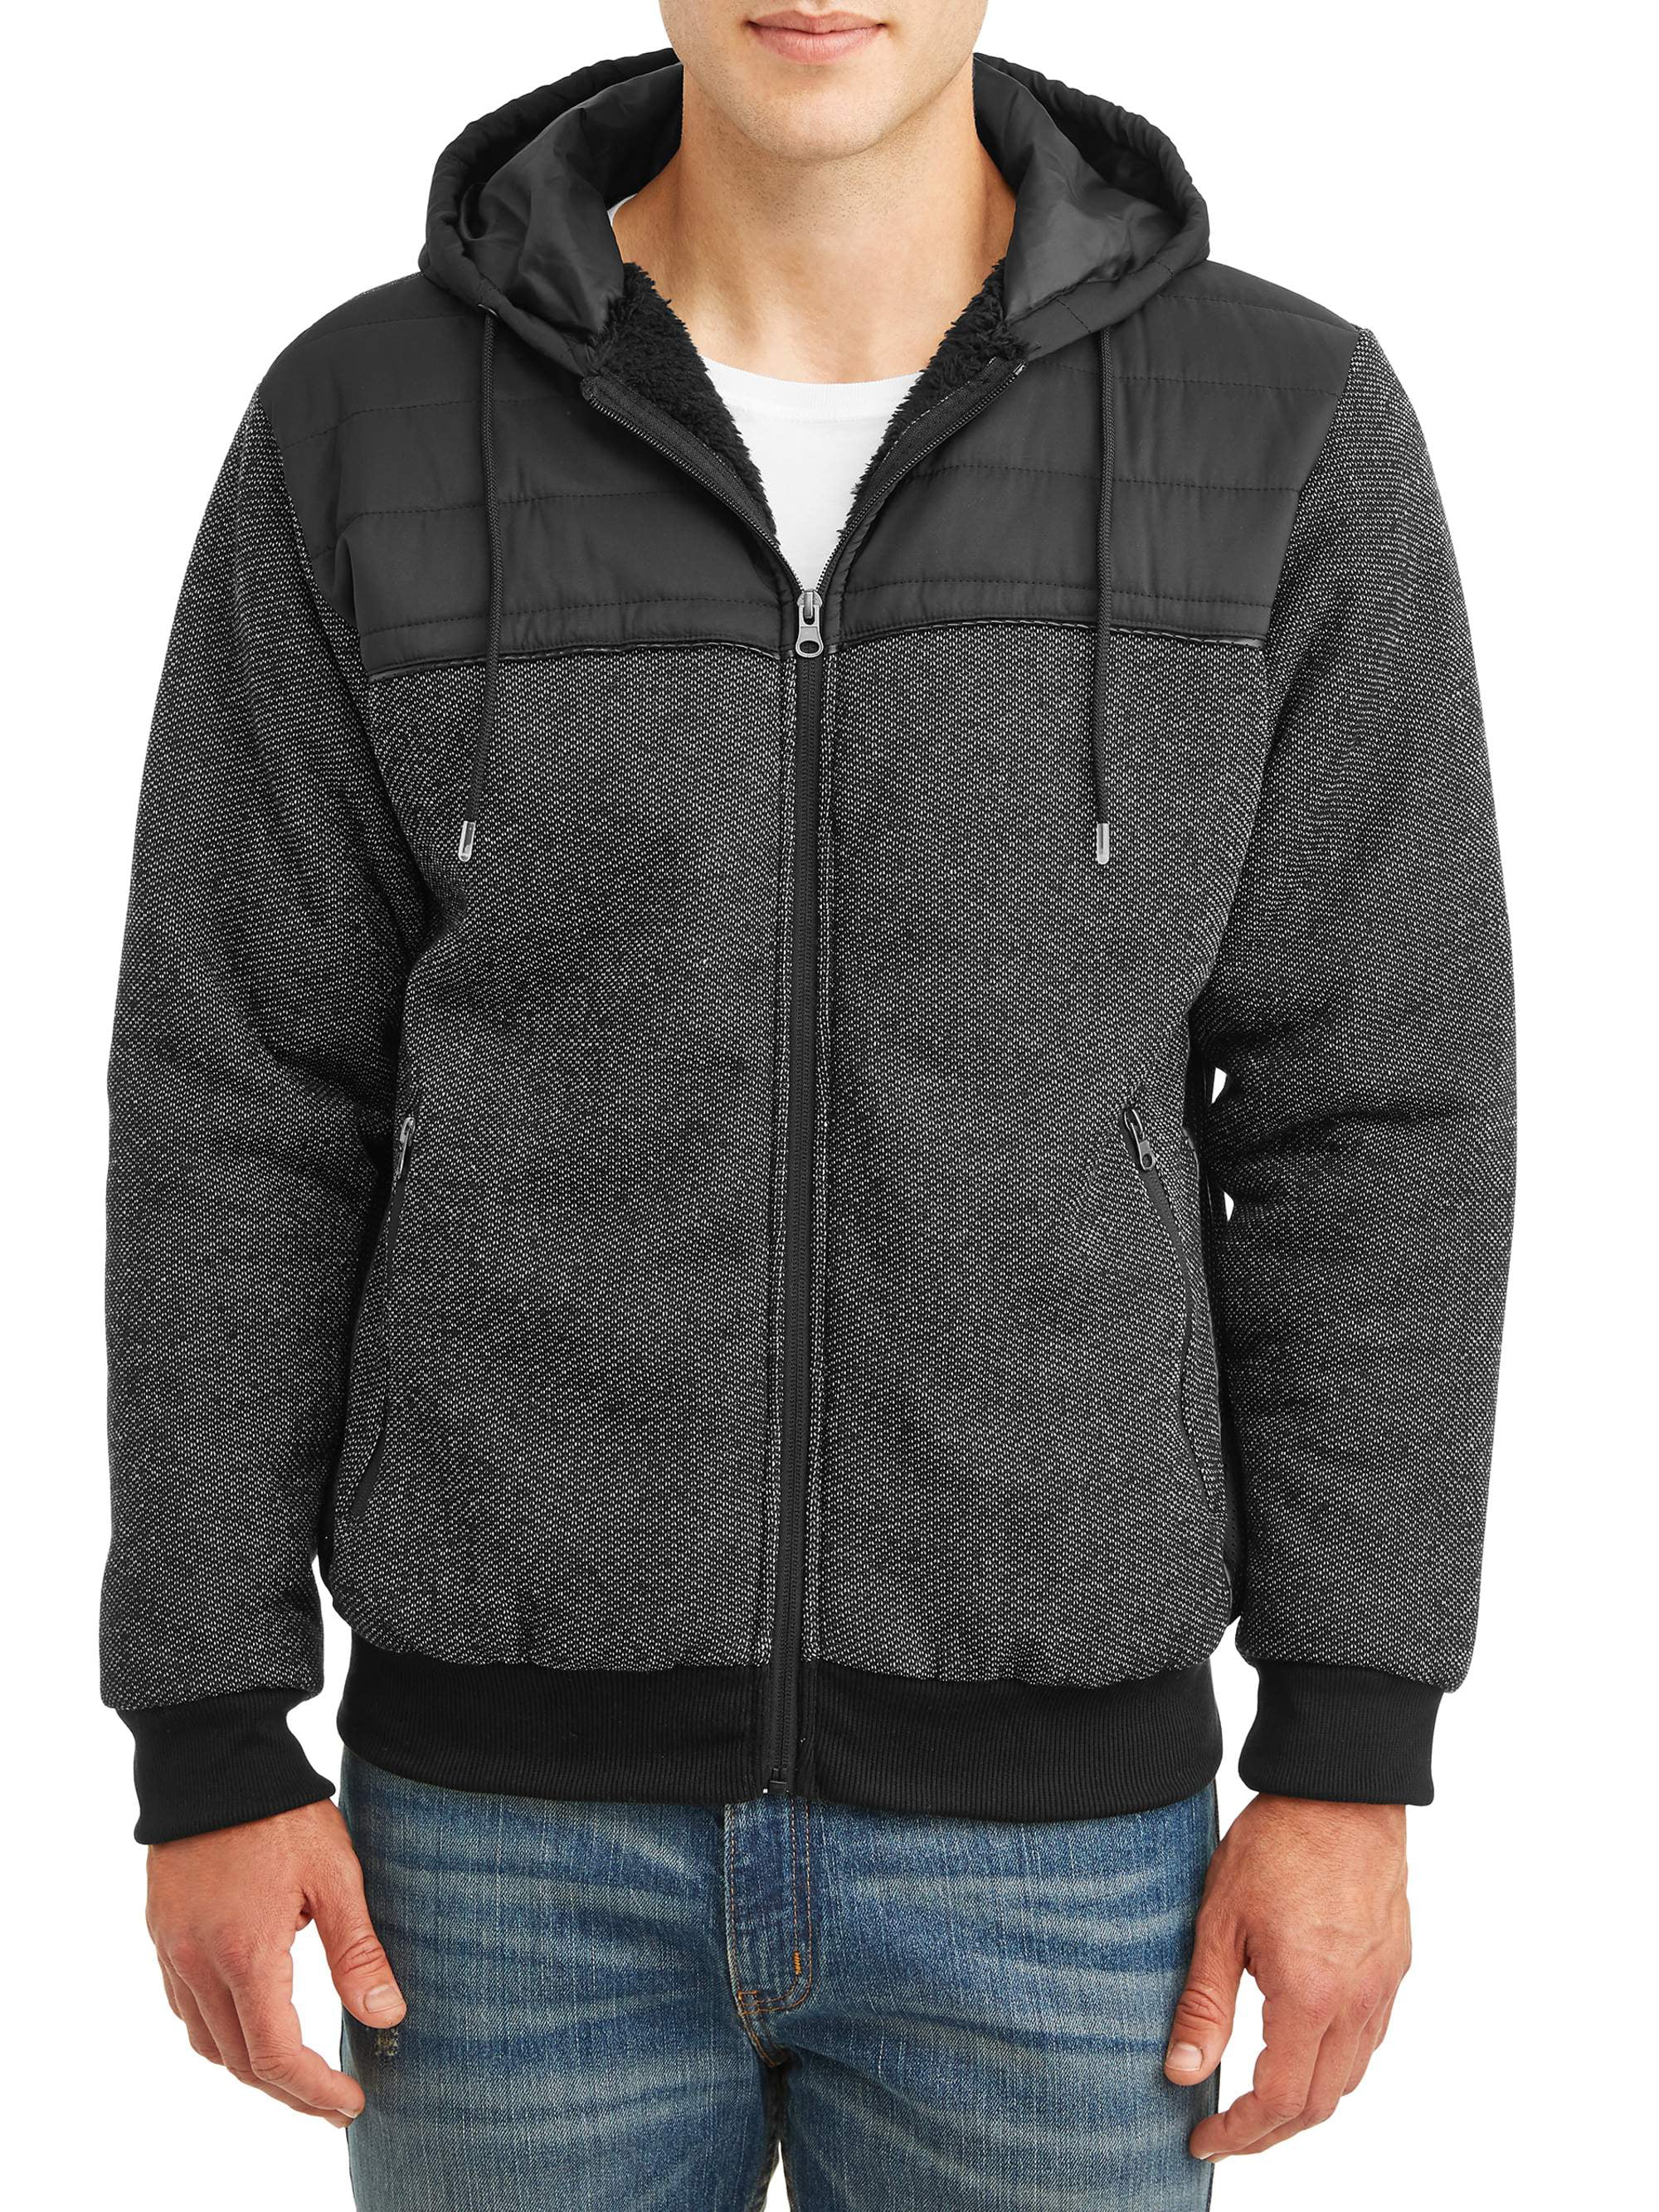 PNW Men's Full Zip Sweater Fleece Hood Jacket with Nylon Piercing, up ...